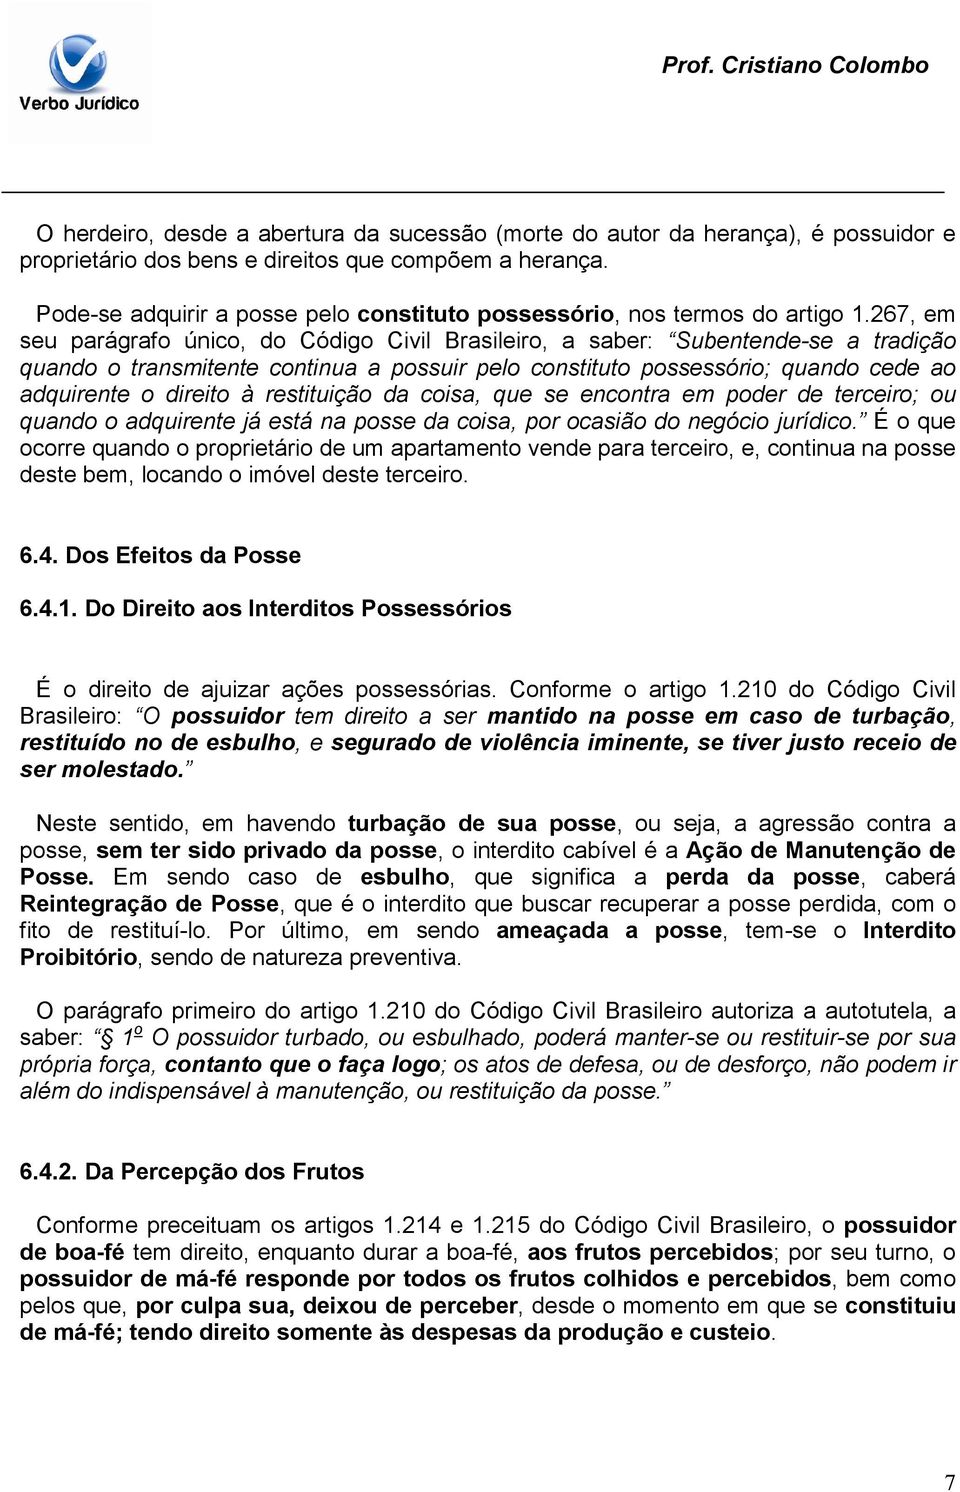 267, em seu parágrafo único, do Código Civil Brasileiro, a saber: Subentende-se a tradição quando o transmitente continua a possuir pelo constituto possessório; quando cede ao adquirente o direito à